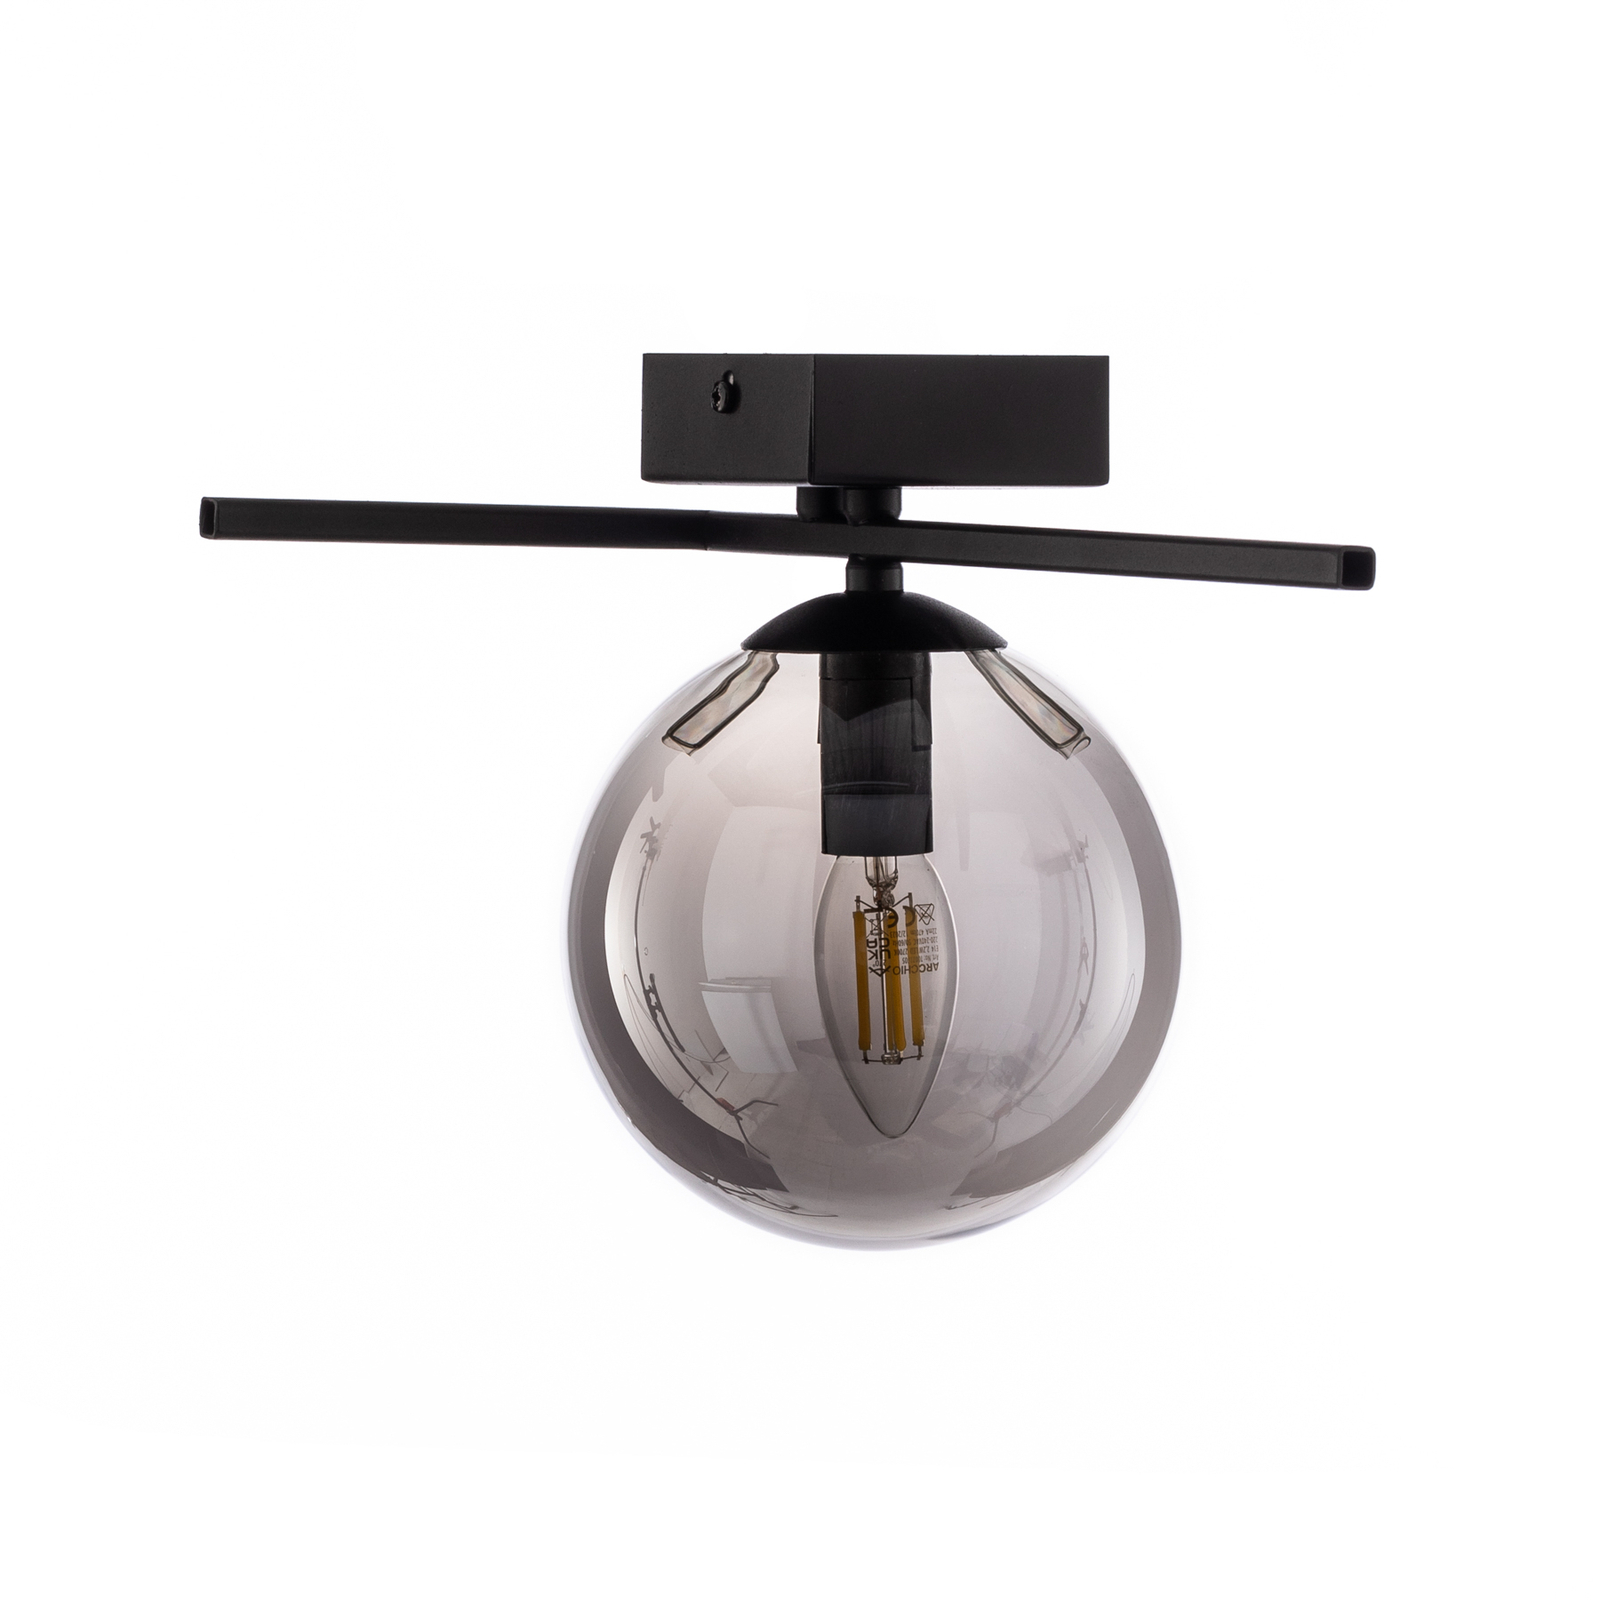 Taklampa Imago 1G, 1 lampa, svart/grafik